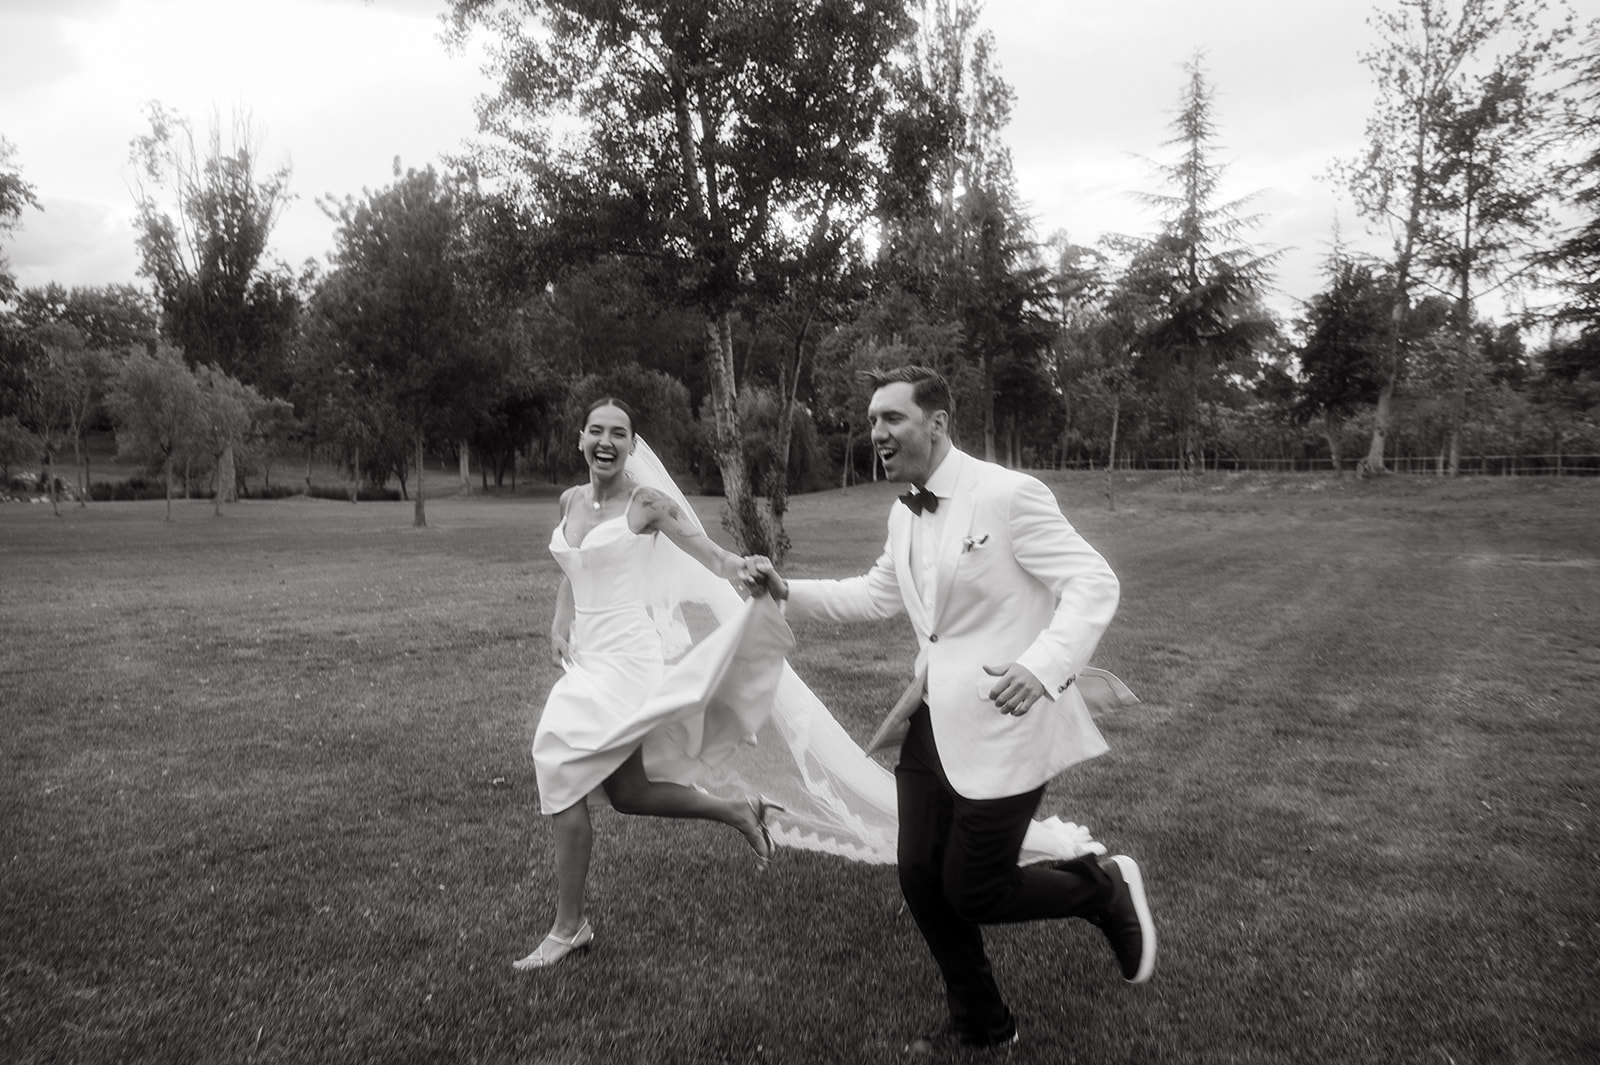 stylish wedding couple shoot ideas 